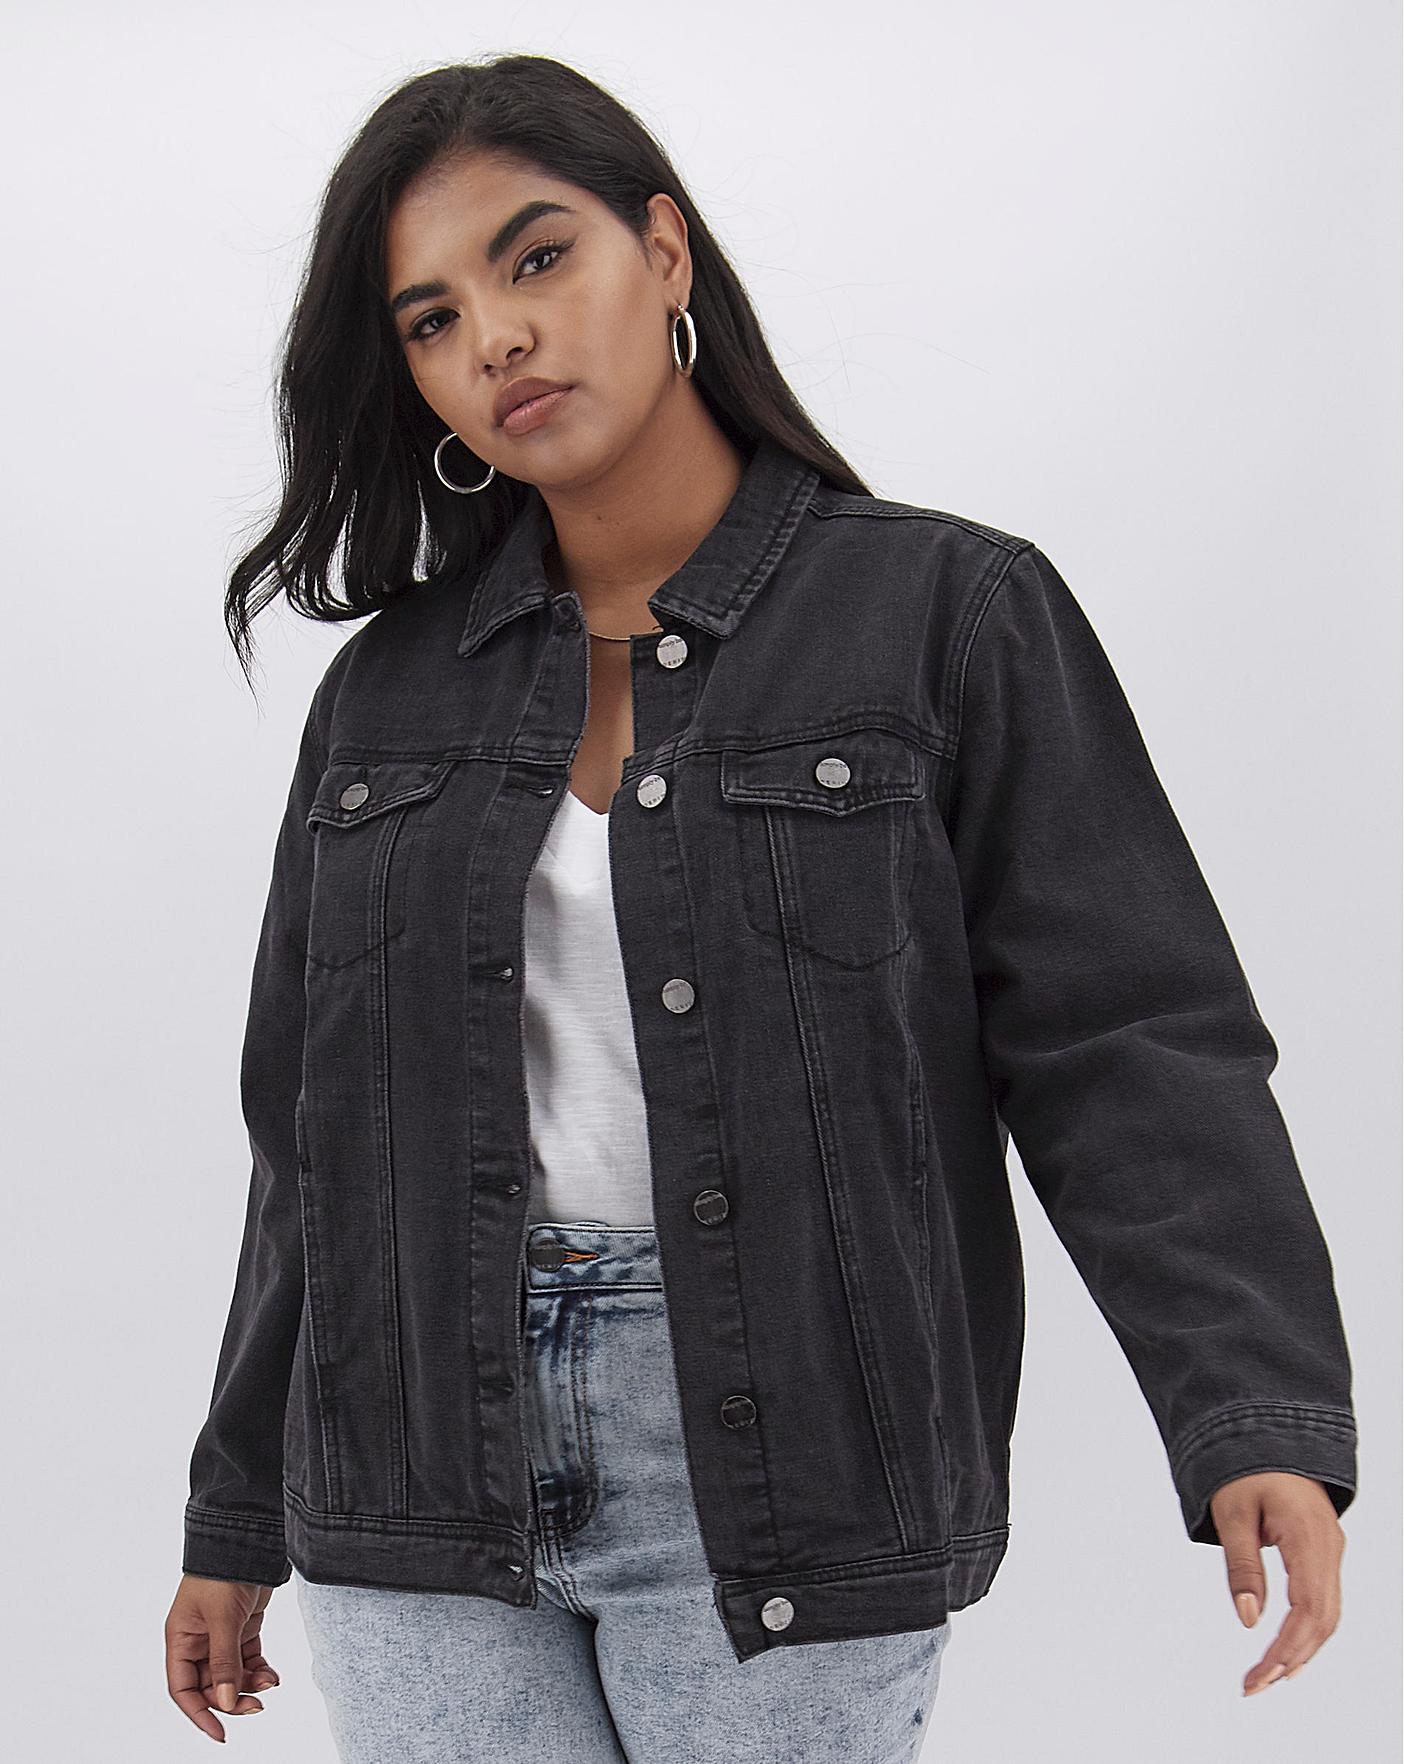 jean jacket on sale